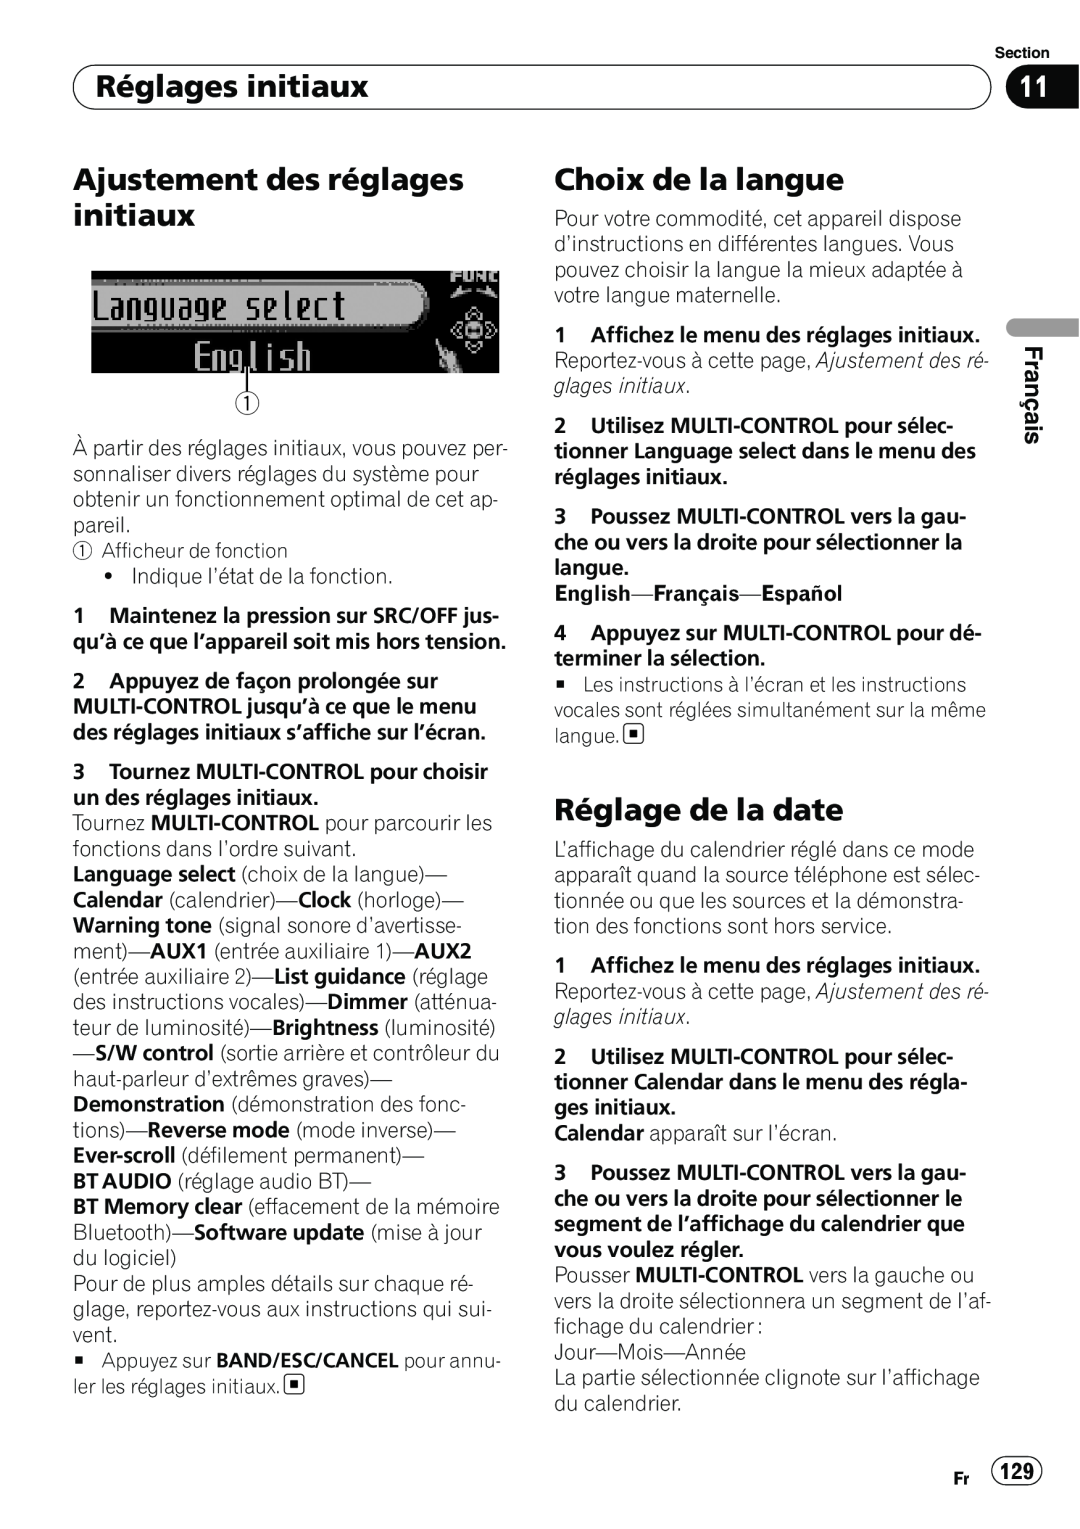 Pioneer DEH-P7100BT Réglages initiaux, Ajustement des réglages initiaux, Choix de la langue, Réglage de la date, Français 